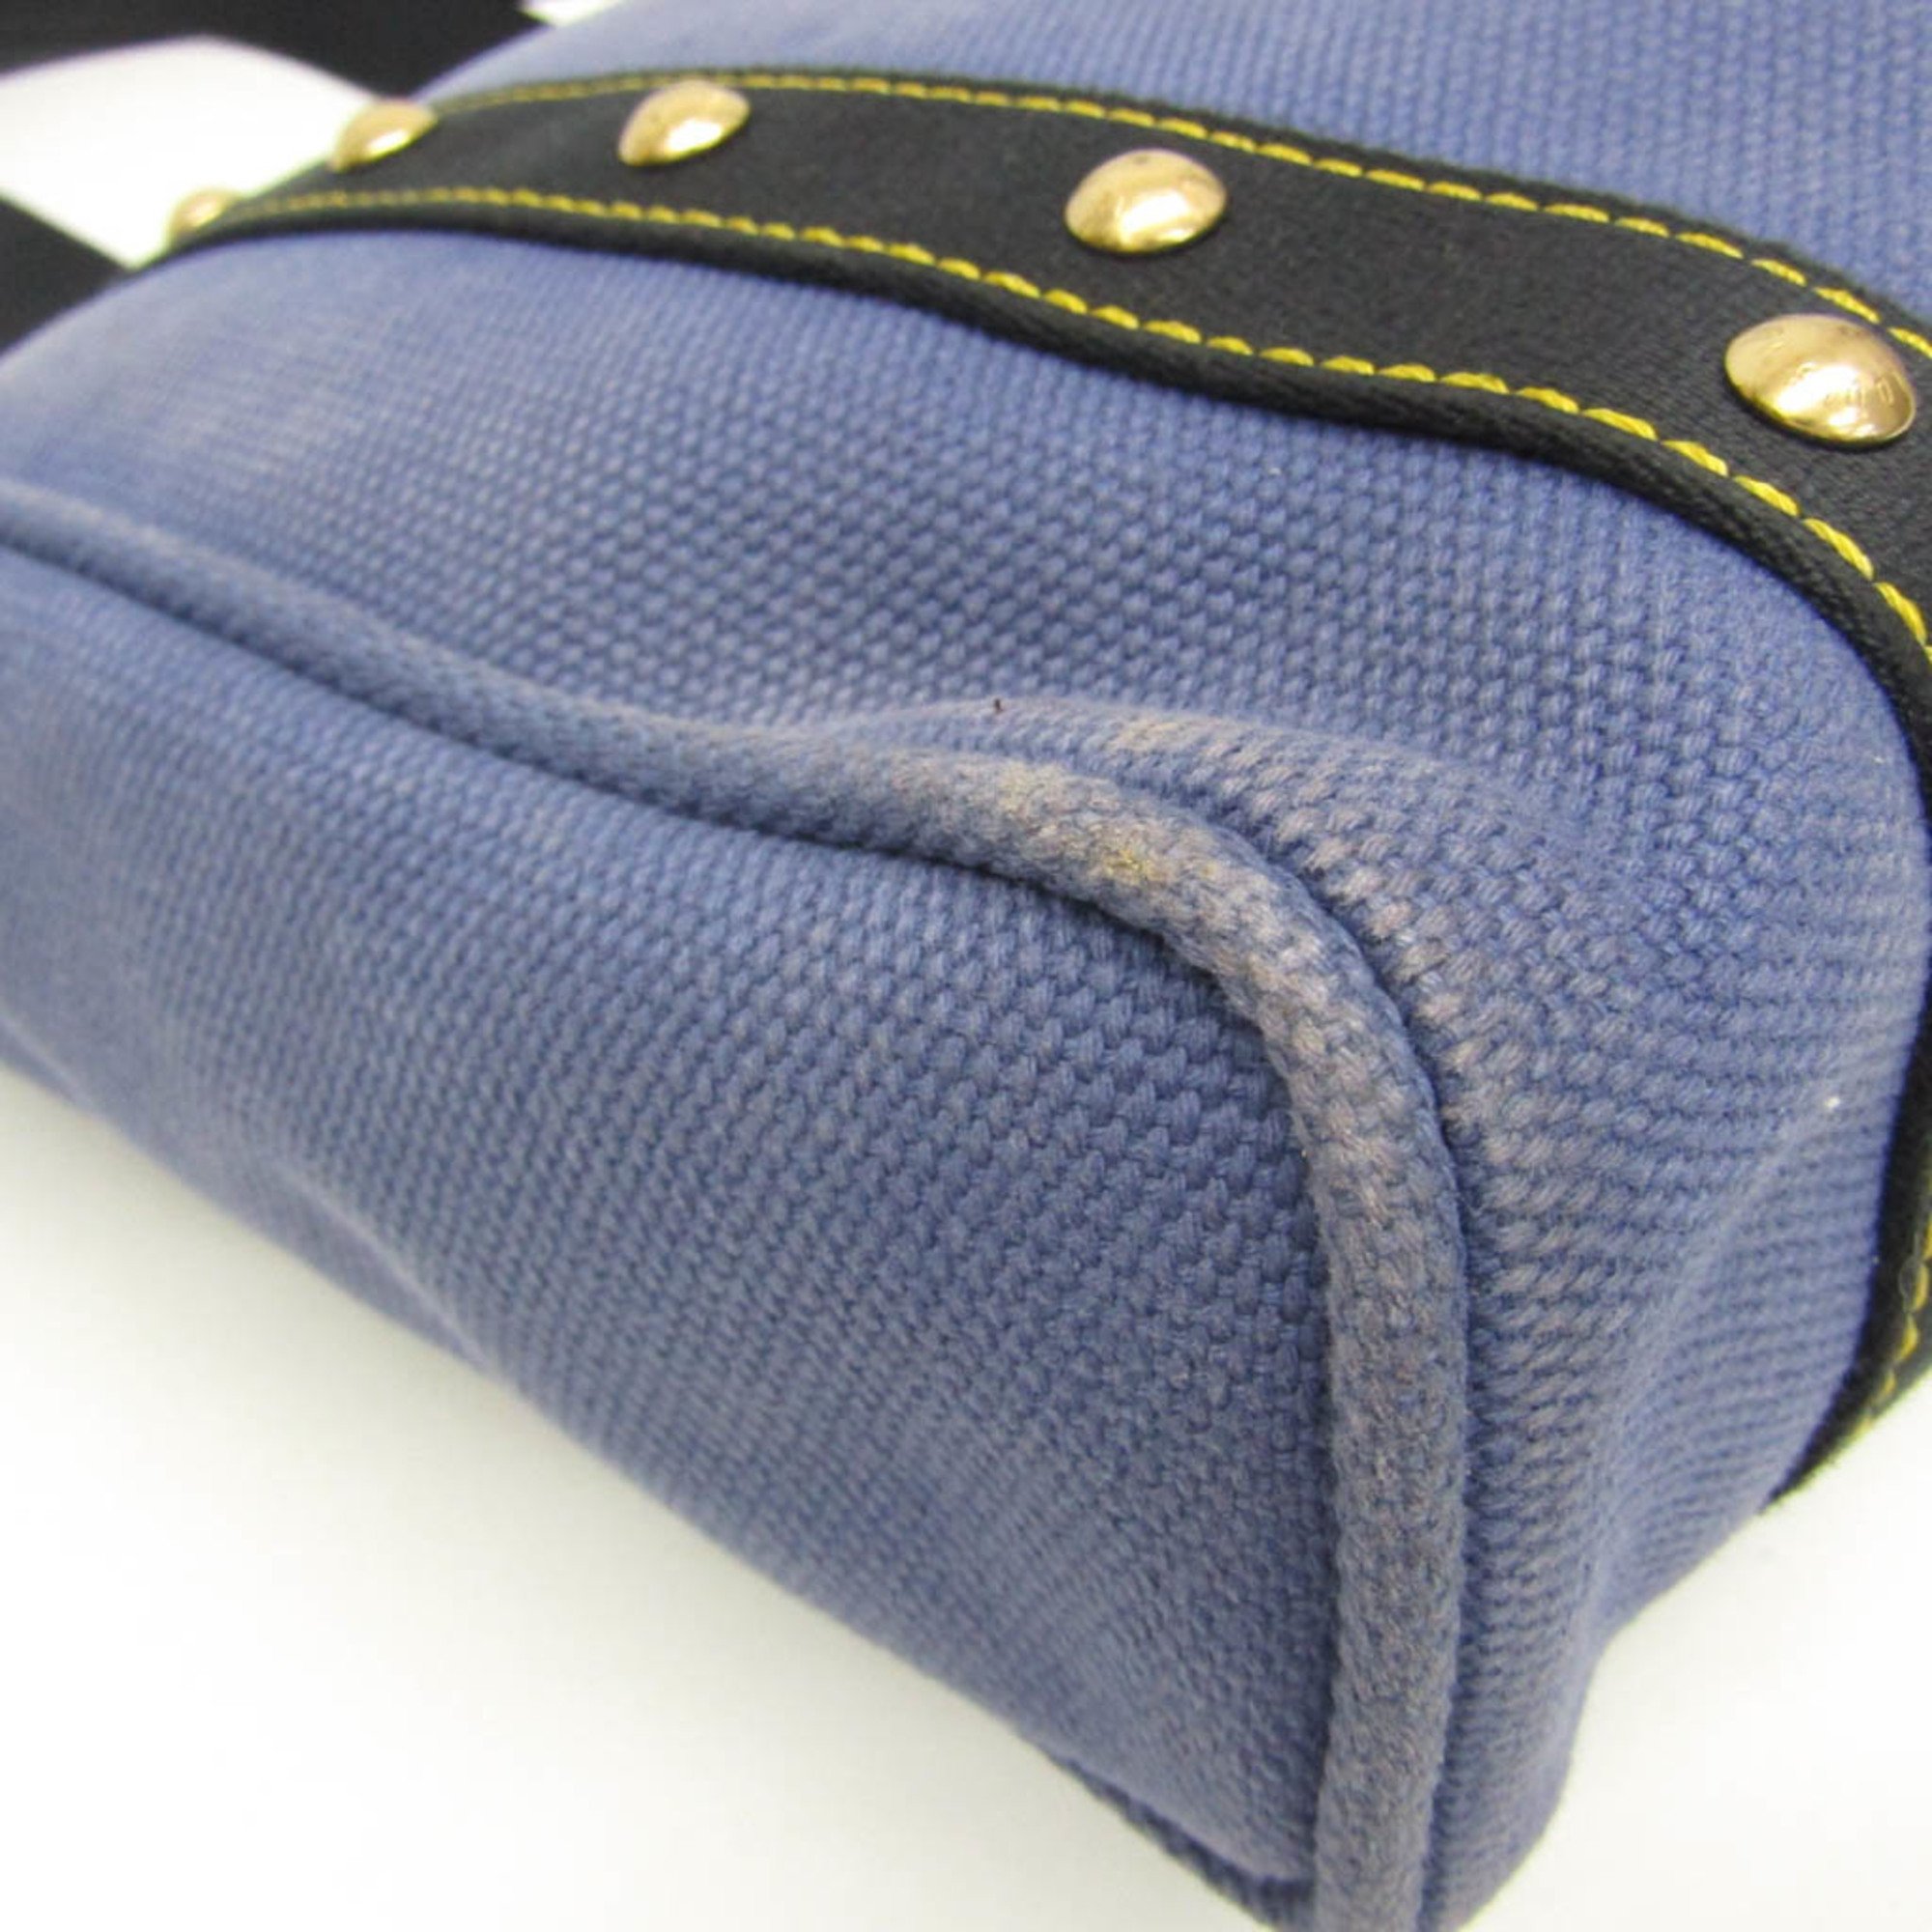 Louis Vuitton Antigua CABAS MM M40087 Women's Tote Bag Blue